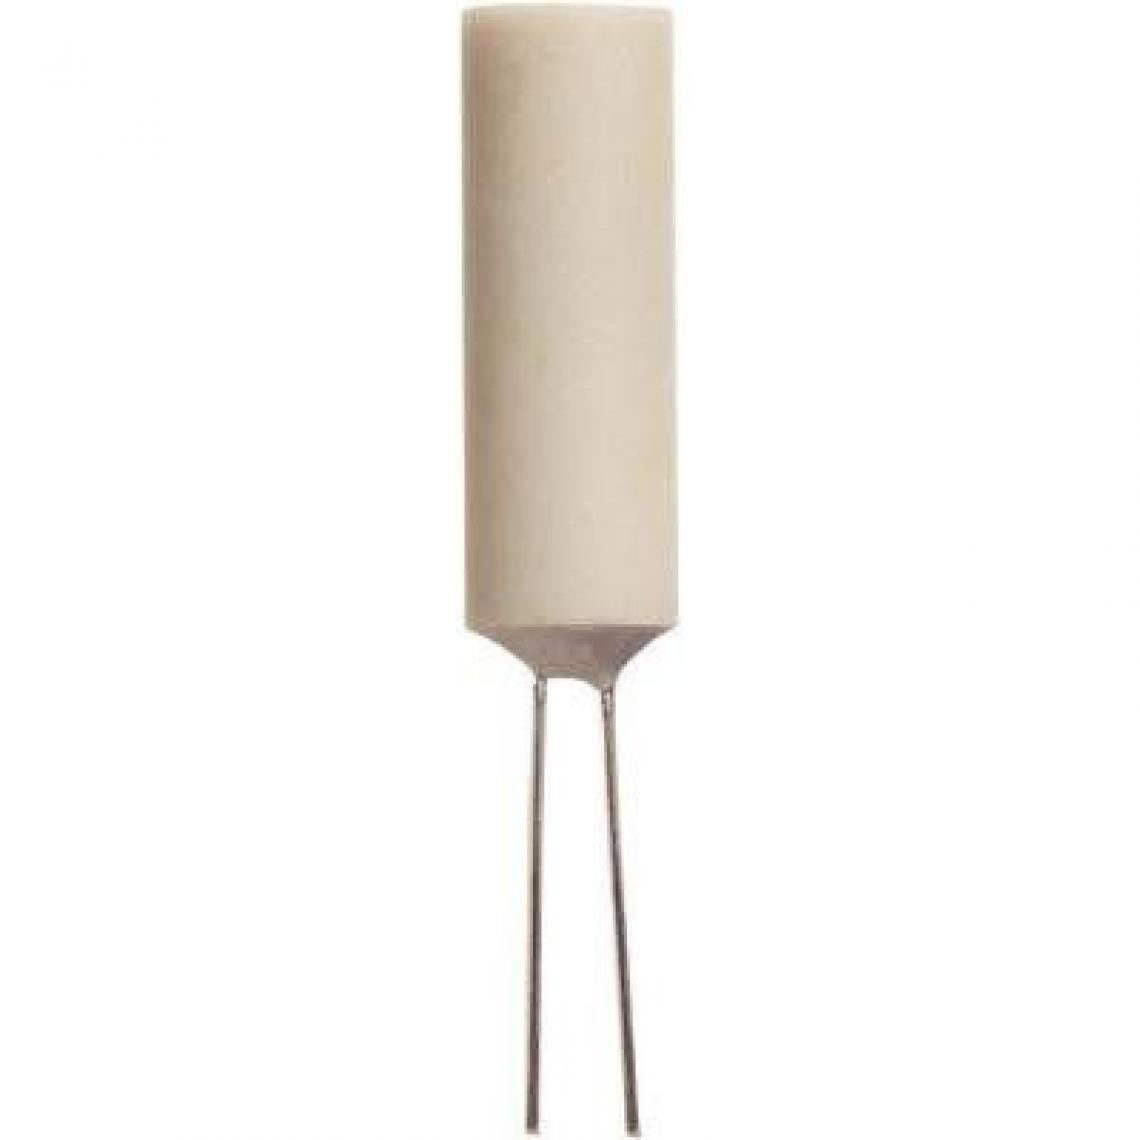 Inconnu - Heraeus PT100 Platin-Temperatursensor MR828 -70 jusque +500°C radial bedrahtet - Thermostat